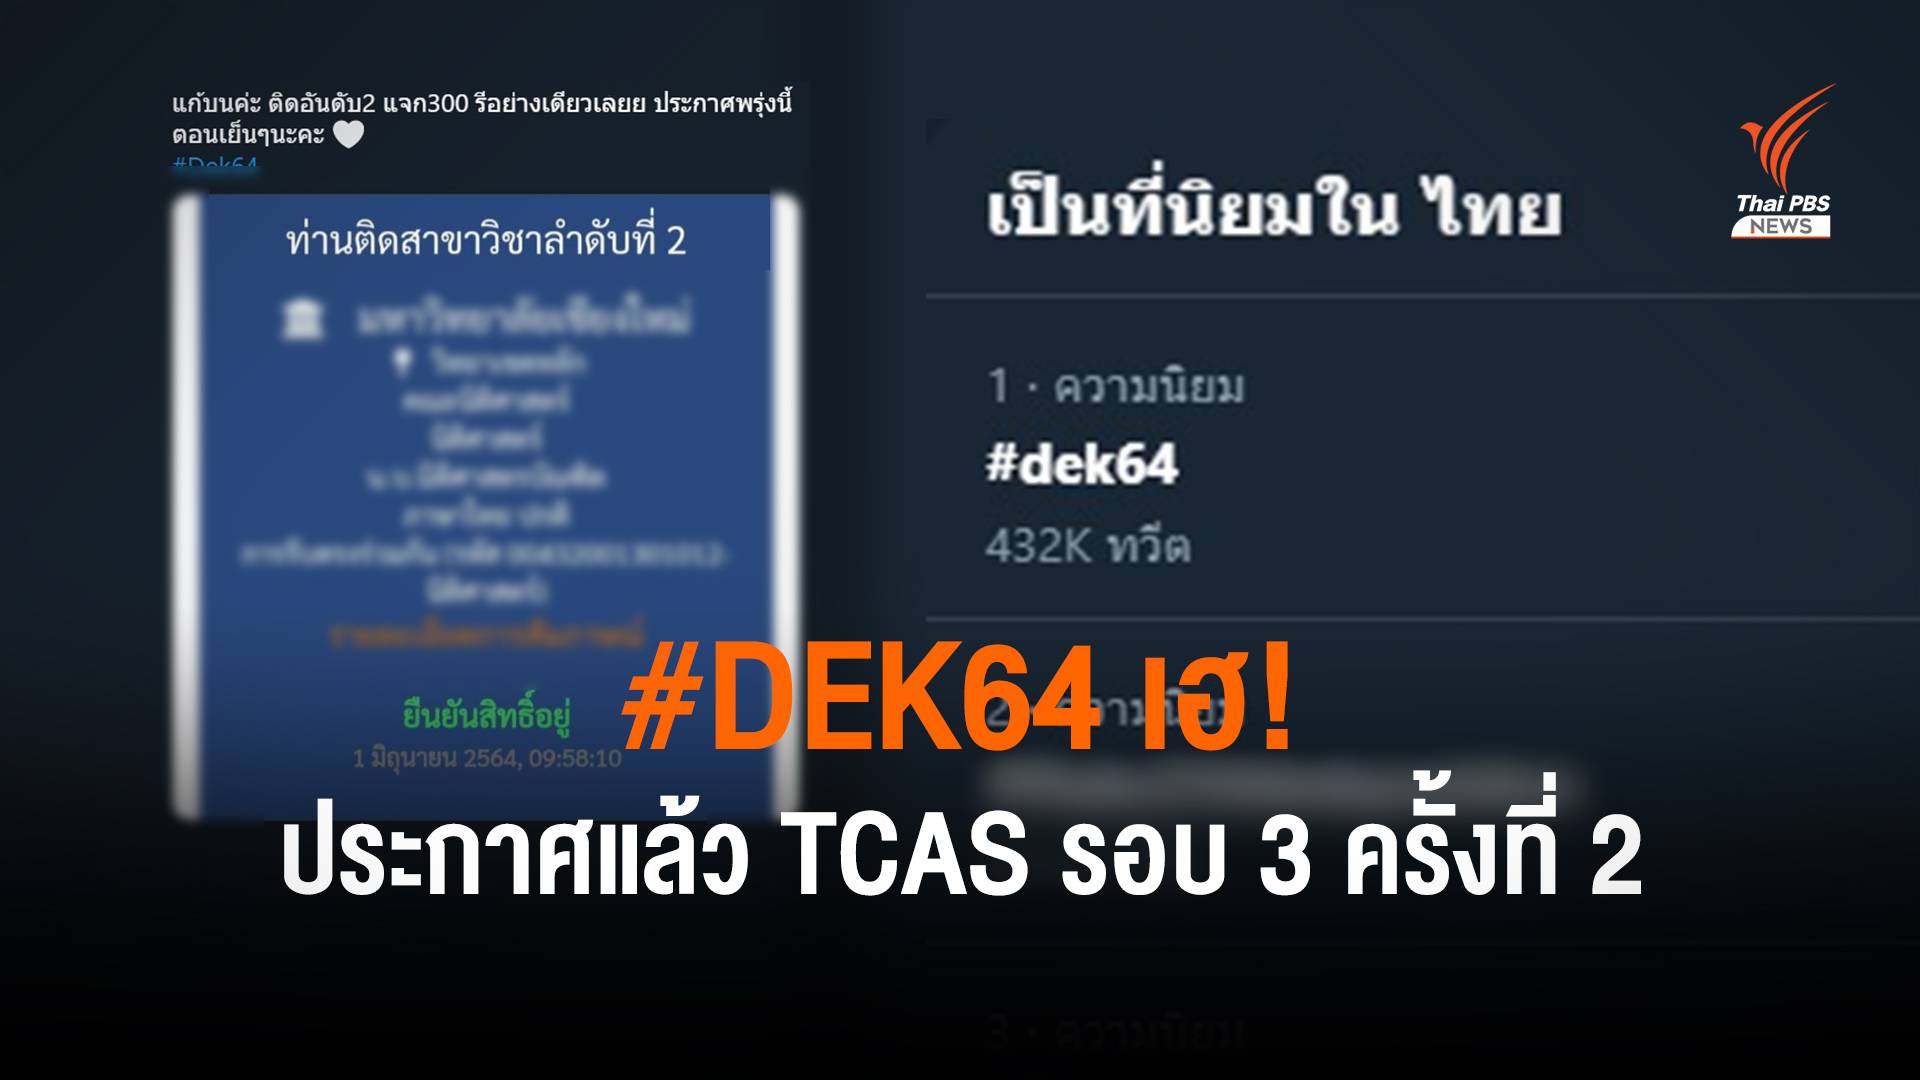 #Dek64 เฮ! ทปอ.ประกาศแล้ว ผลสอบ TCAS รอบ 3 ครั้งที่ 2 